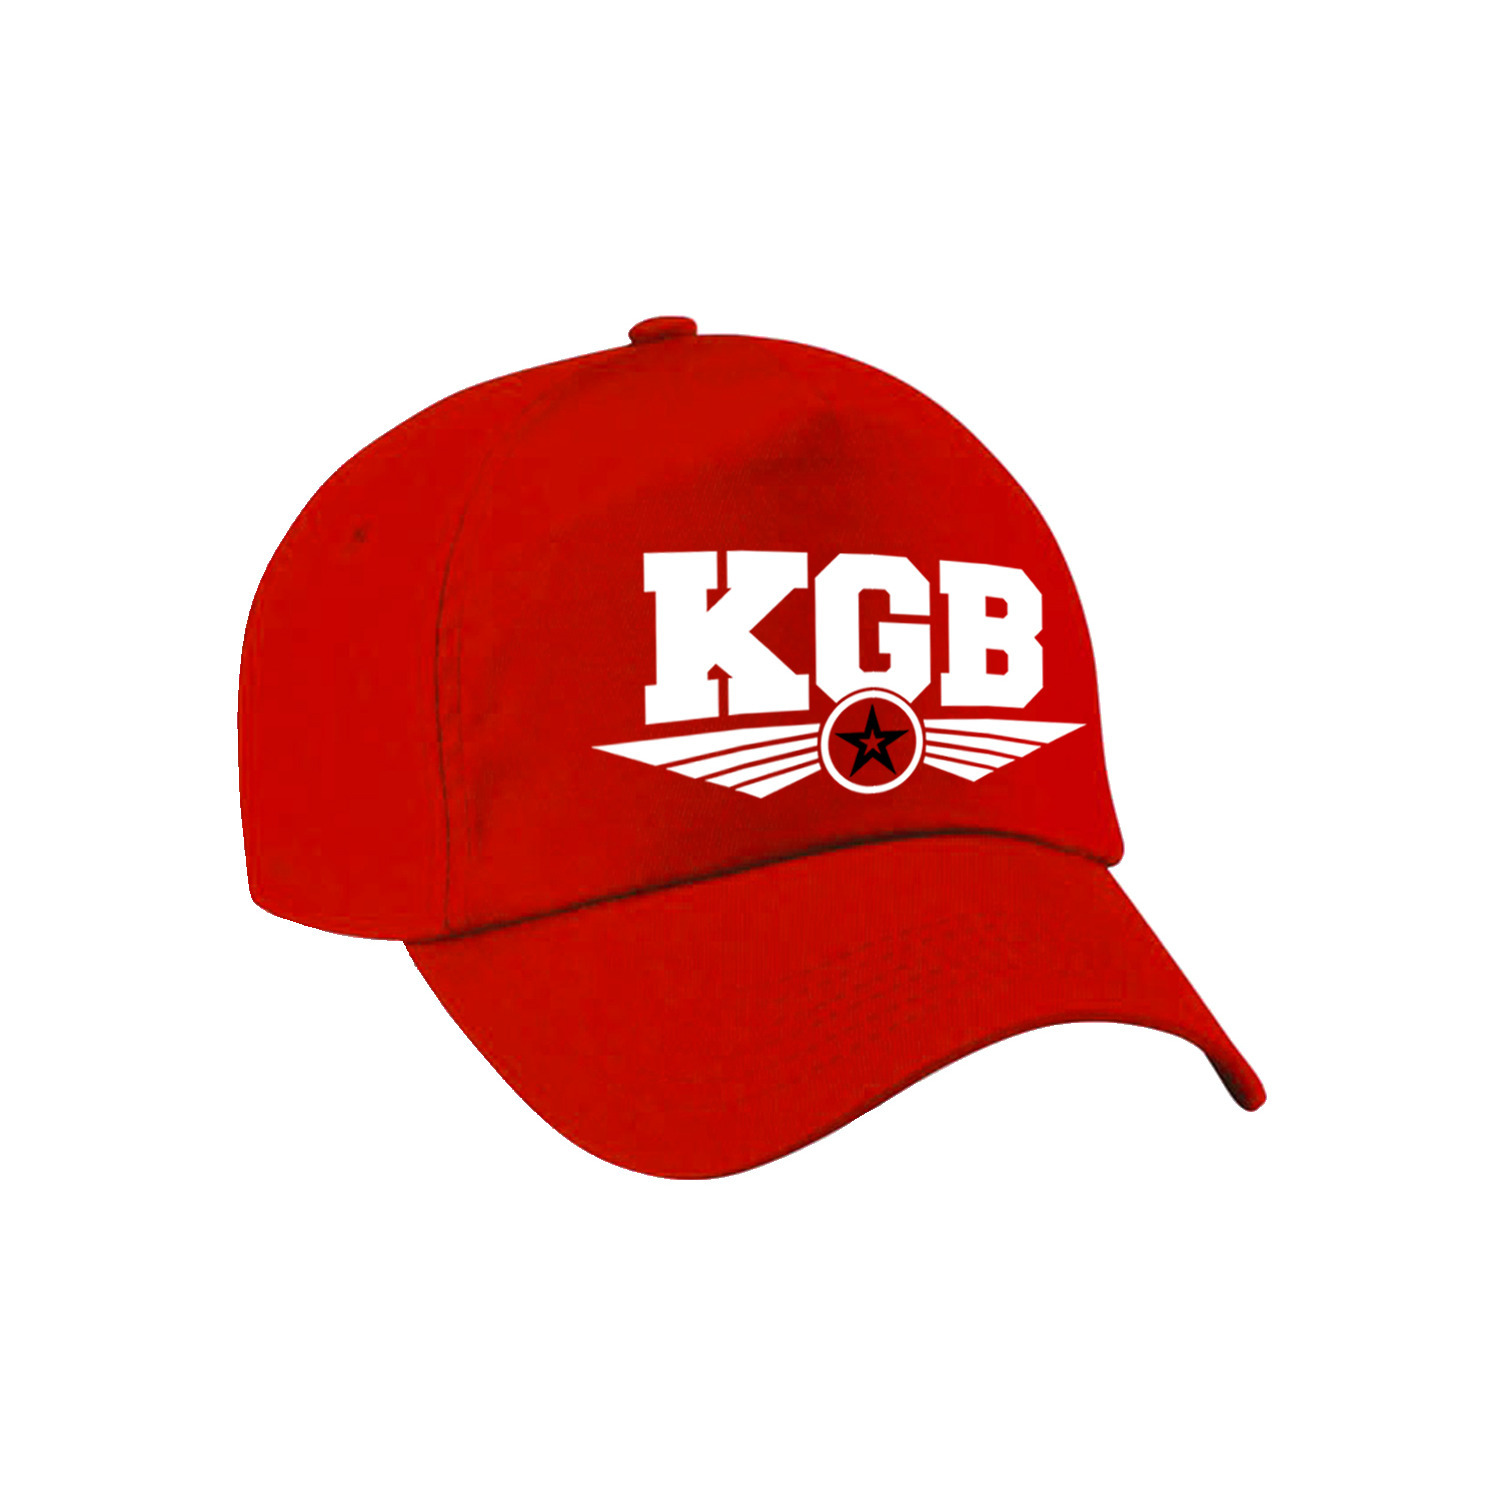 KGB agent tekst pet / baseball cap rood voor kinderen